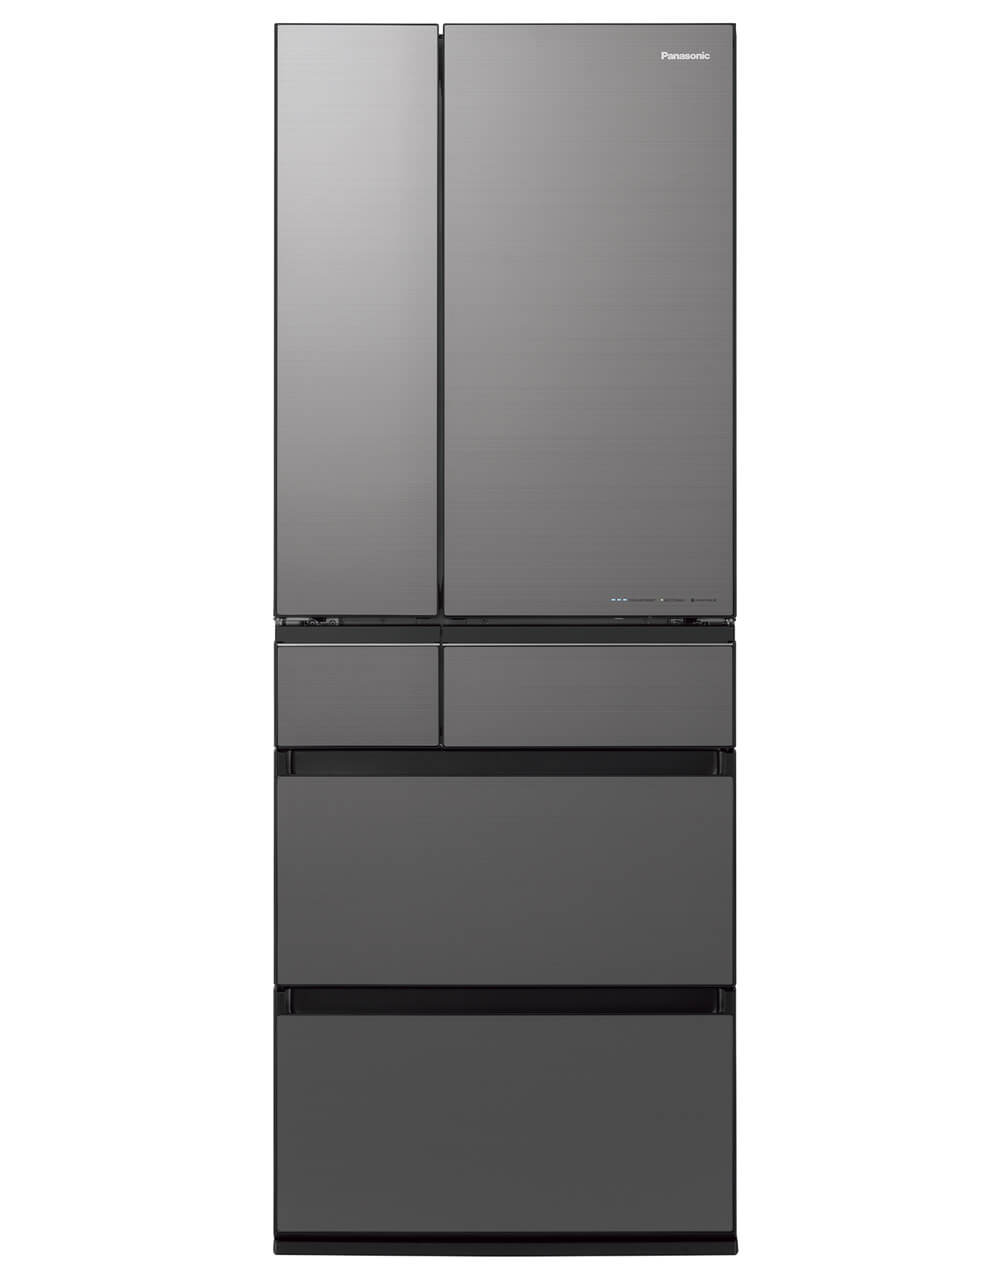 「はやうま冷凍」 搭載冷蔵庫 NR-F608WPXパナソニック